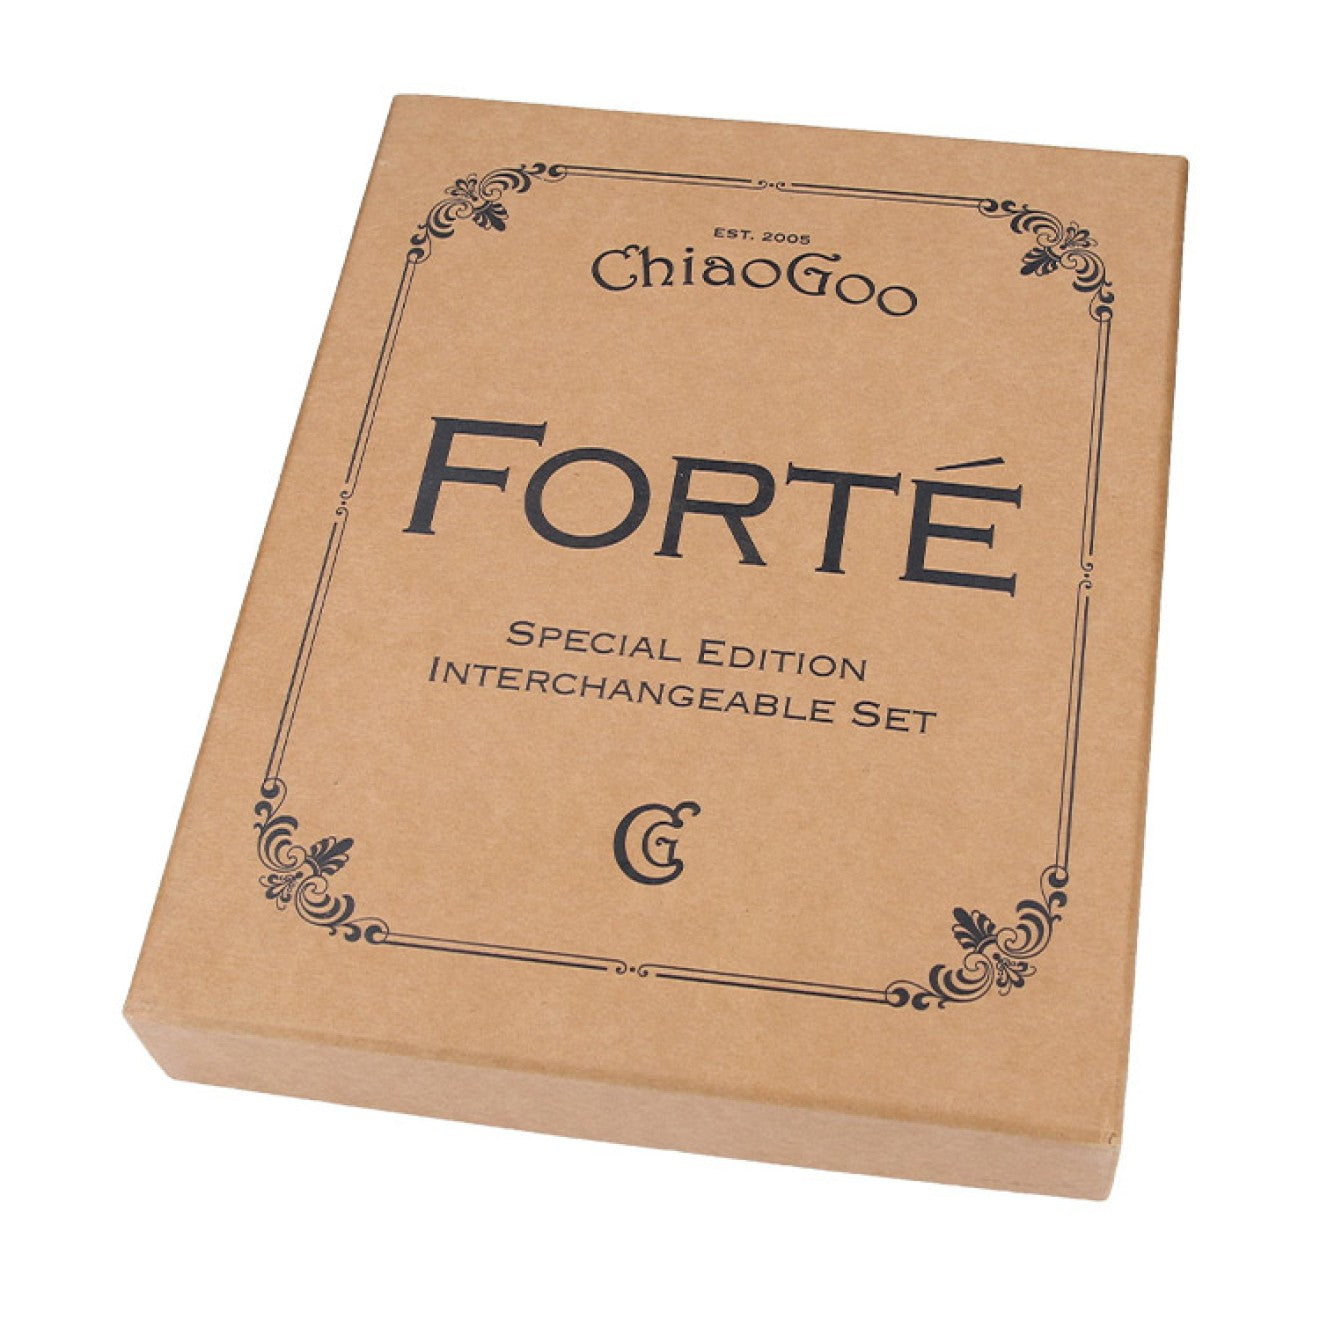 ChiaoGoo Forté Int. knitting ndl set 13cm 2.75-10.00mm - 1pc